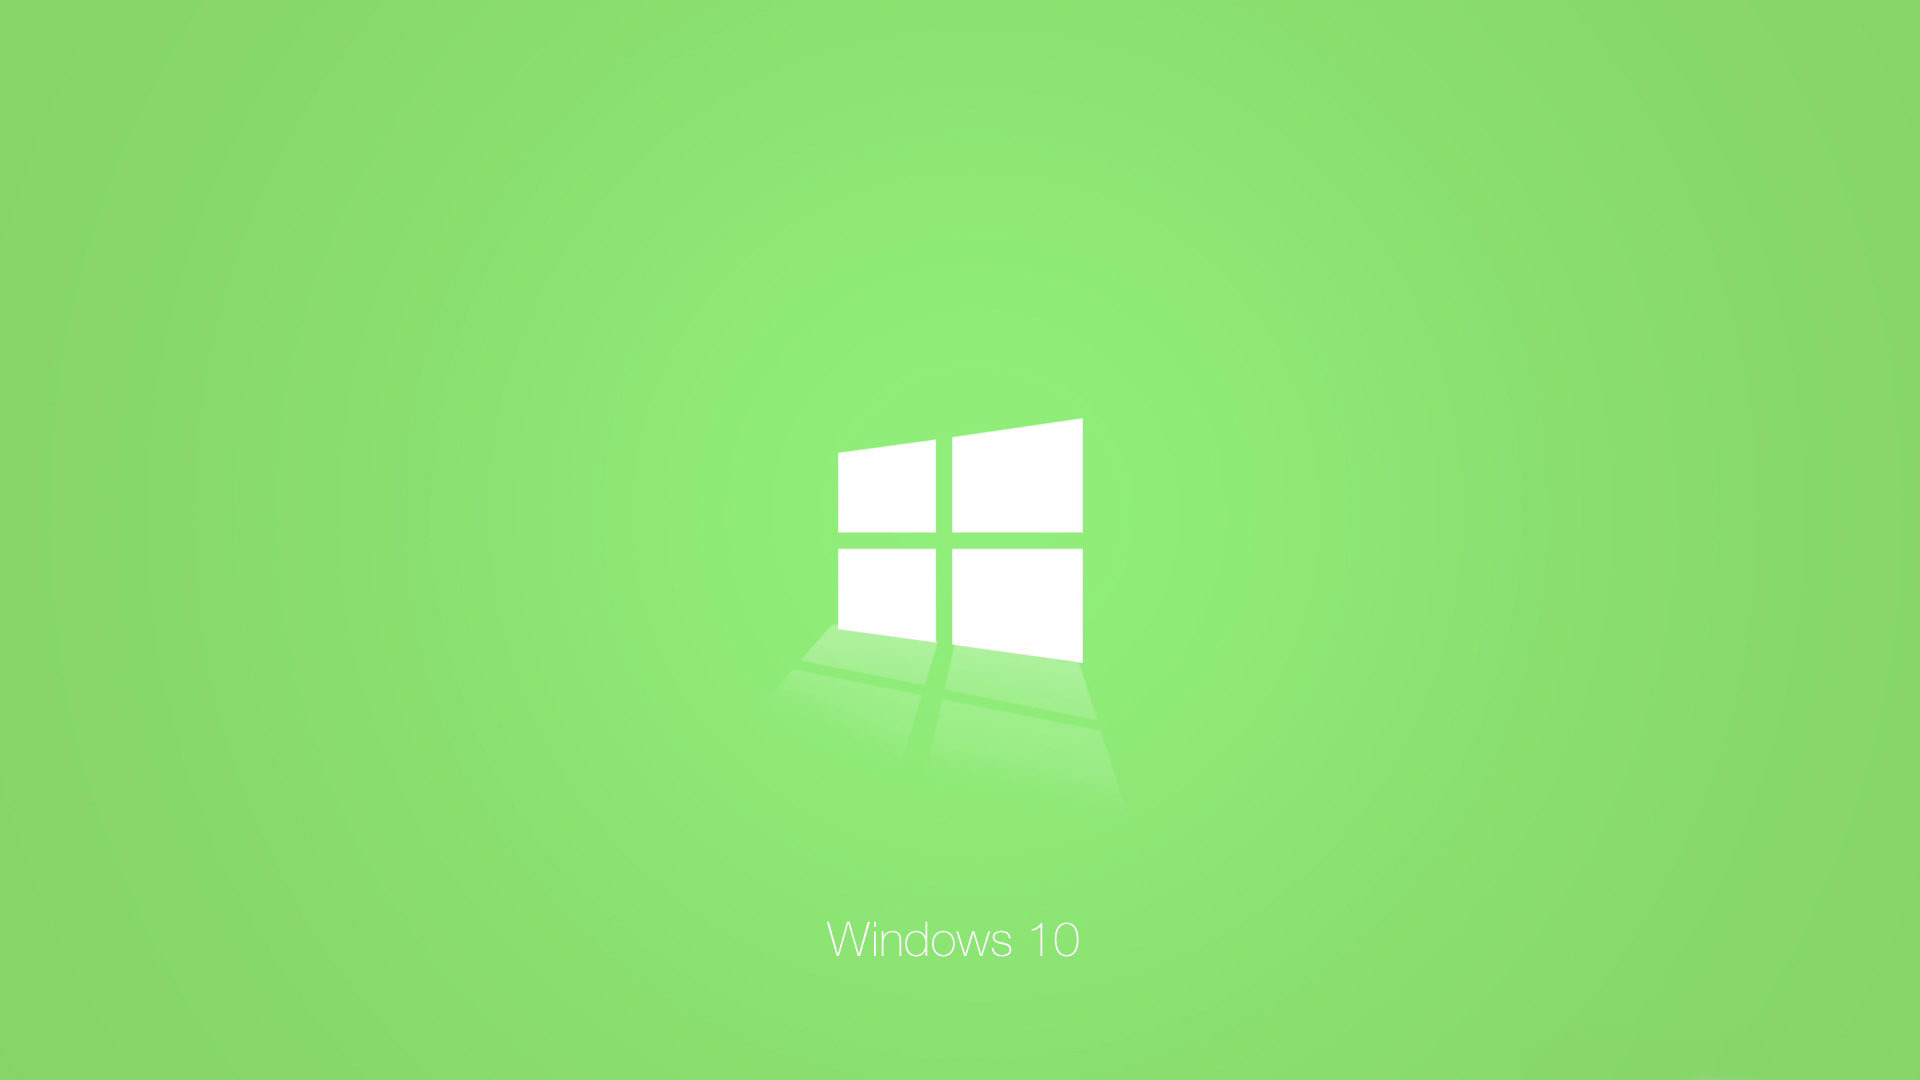 Zastaki.com - Зеленый логотип Windows 10